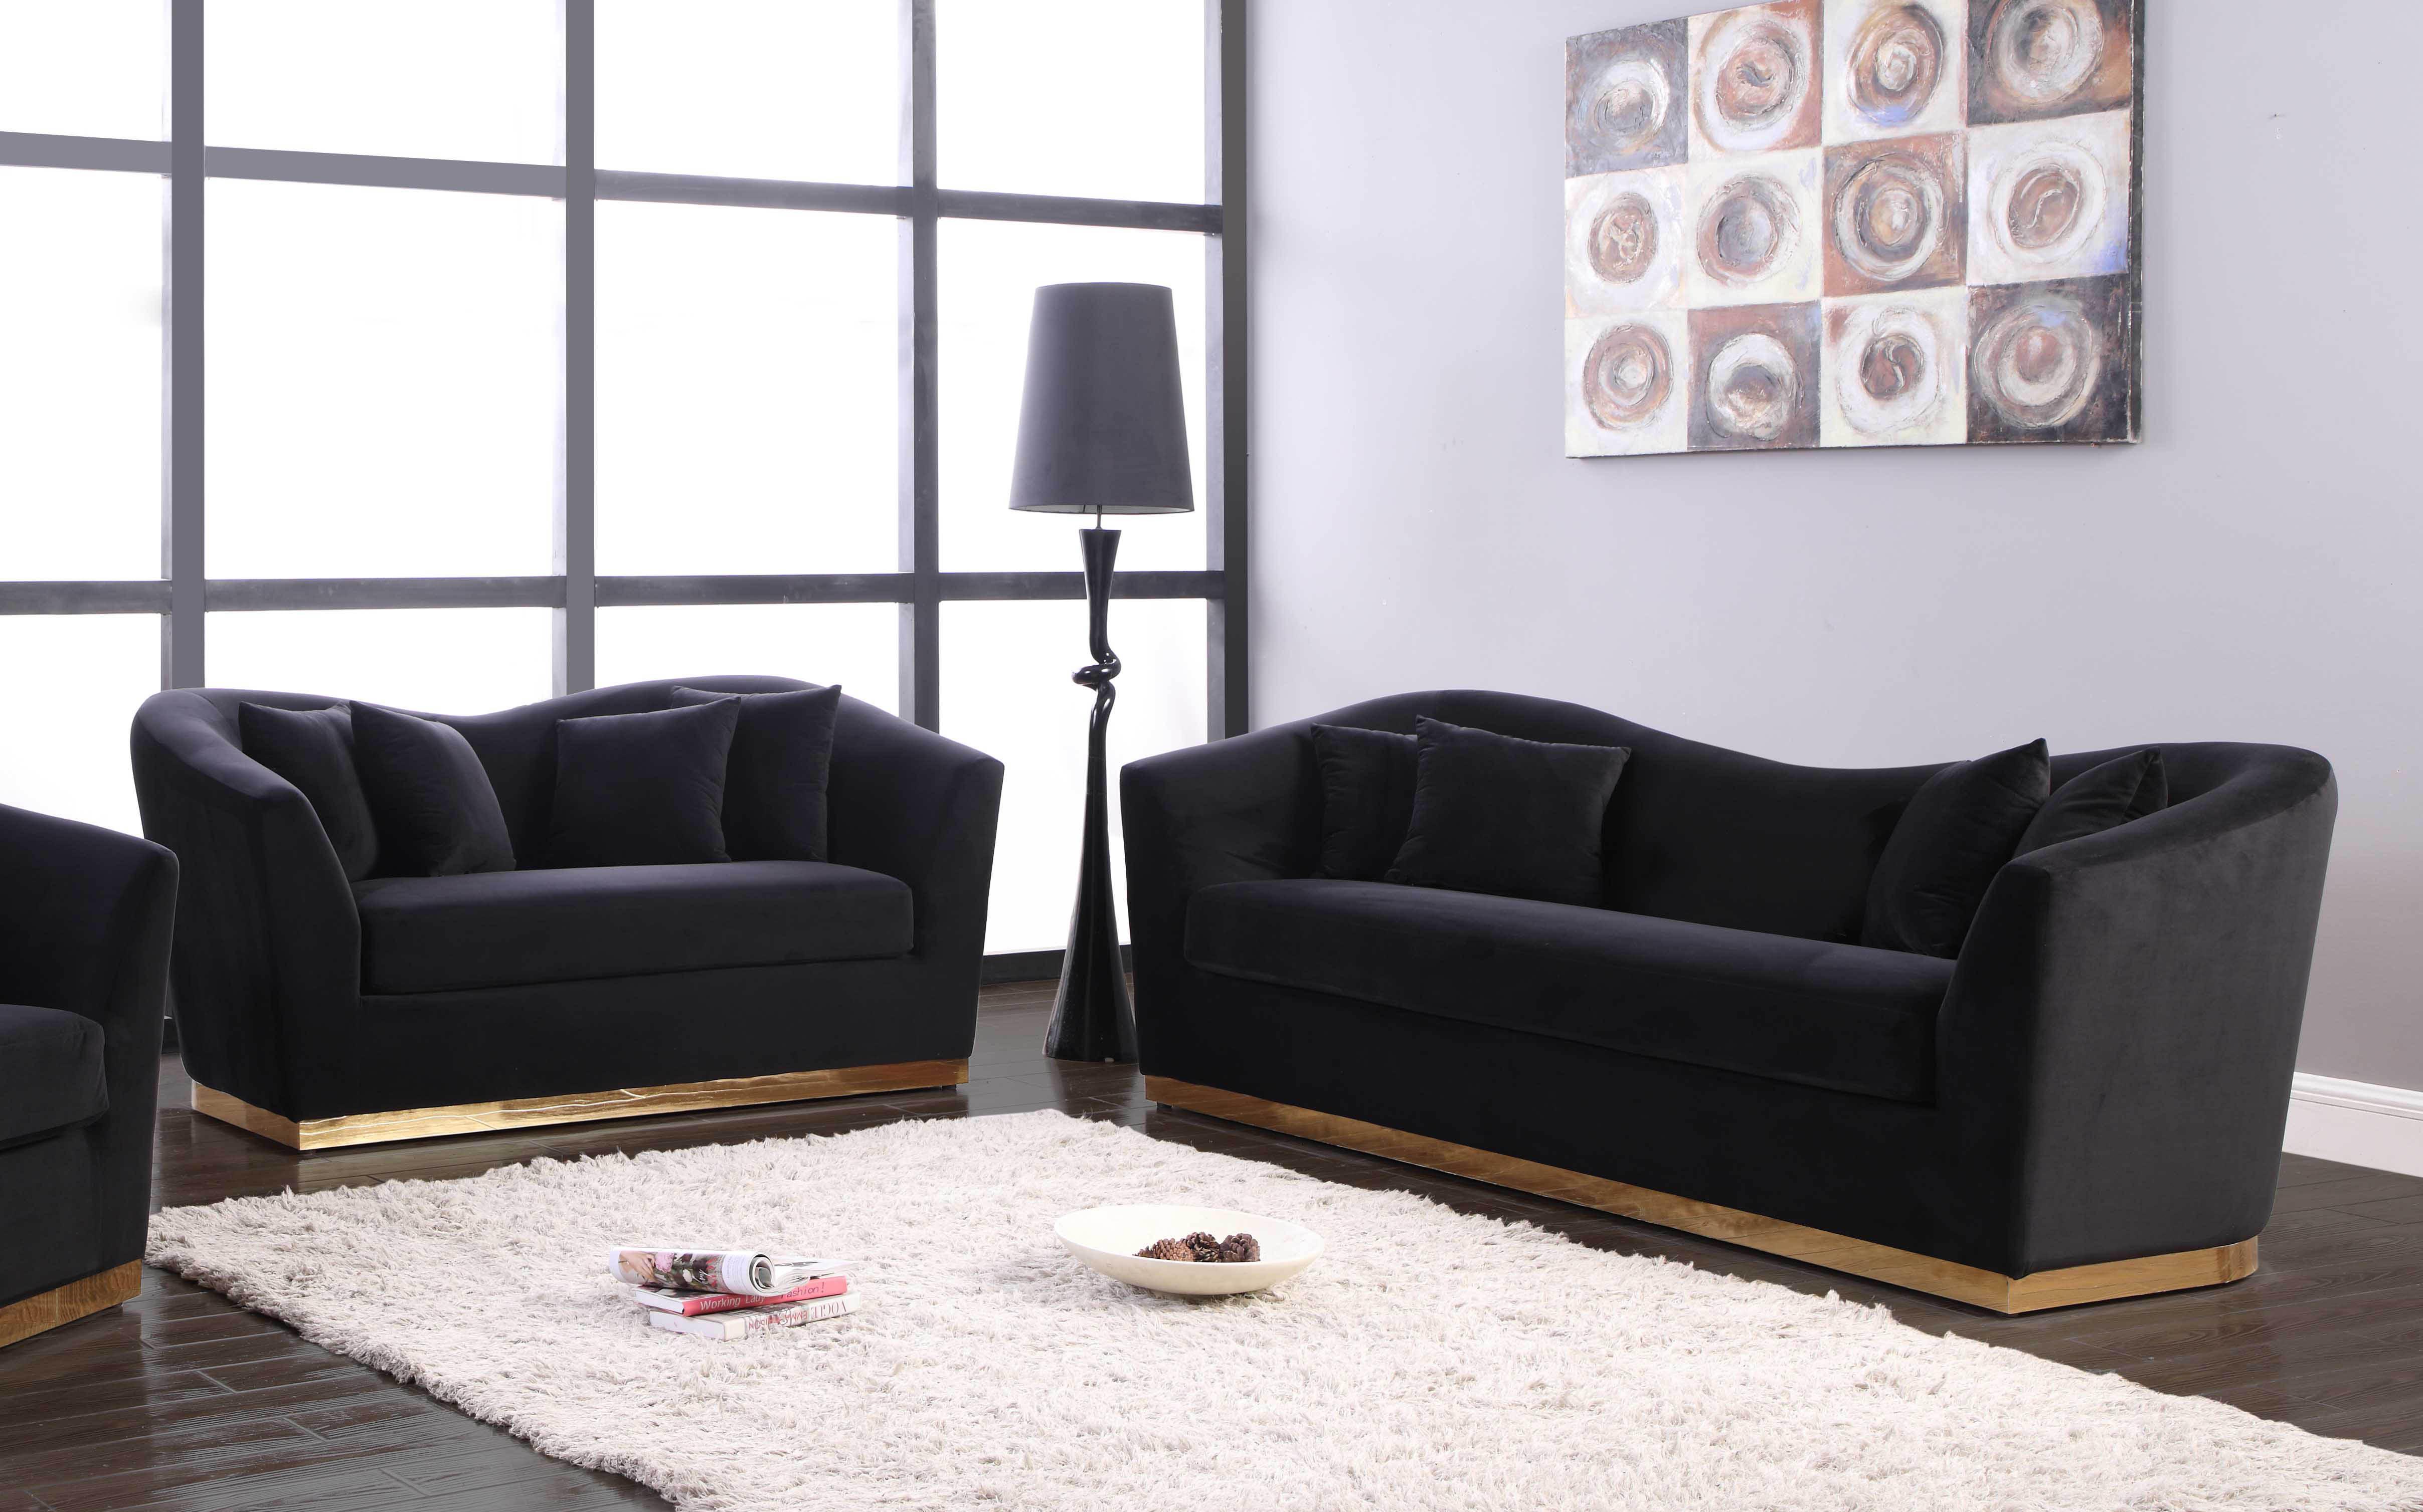 Contemporary, Modern Sofa Set Arabella 617Black-S-Set-2 617Black-S-Set-2 in Black Soft Velvet